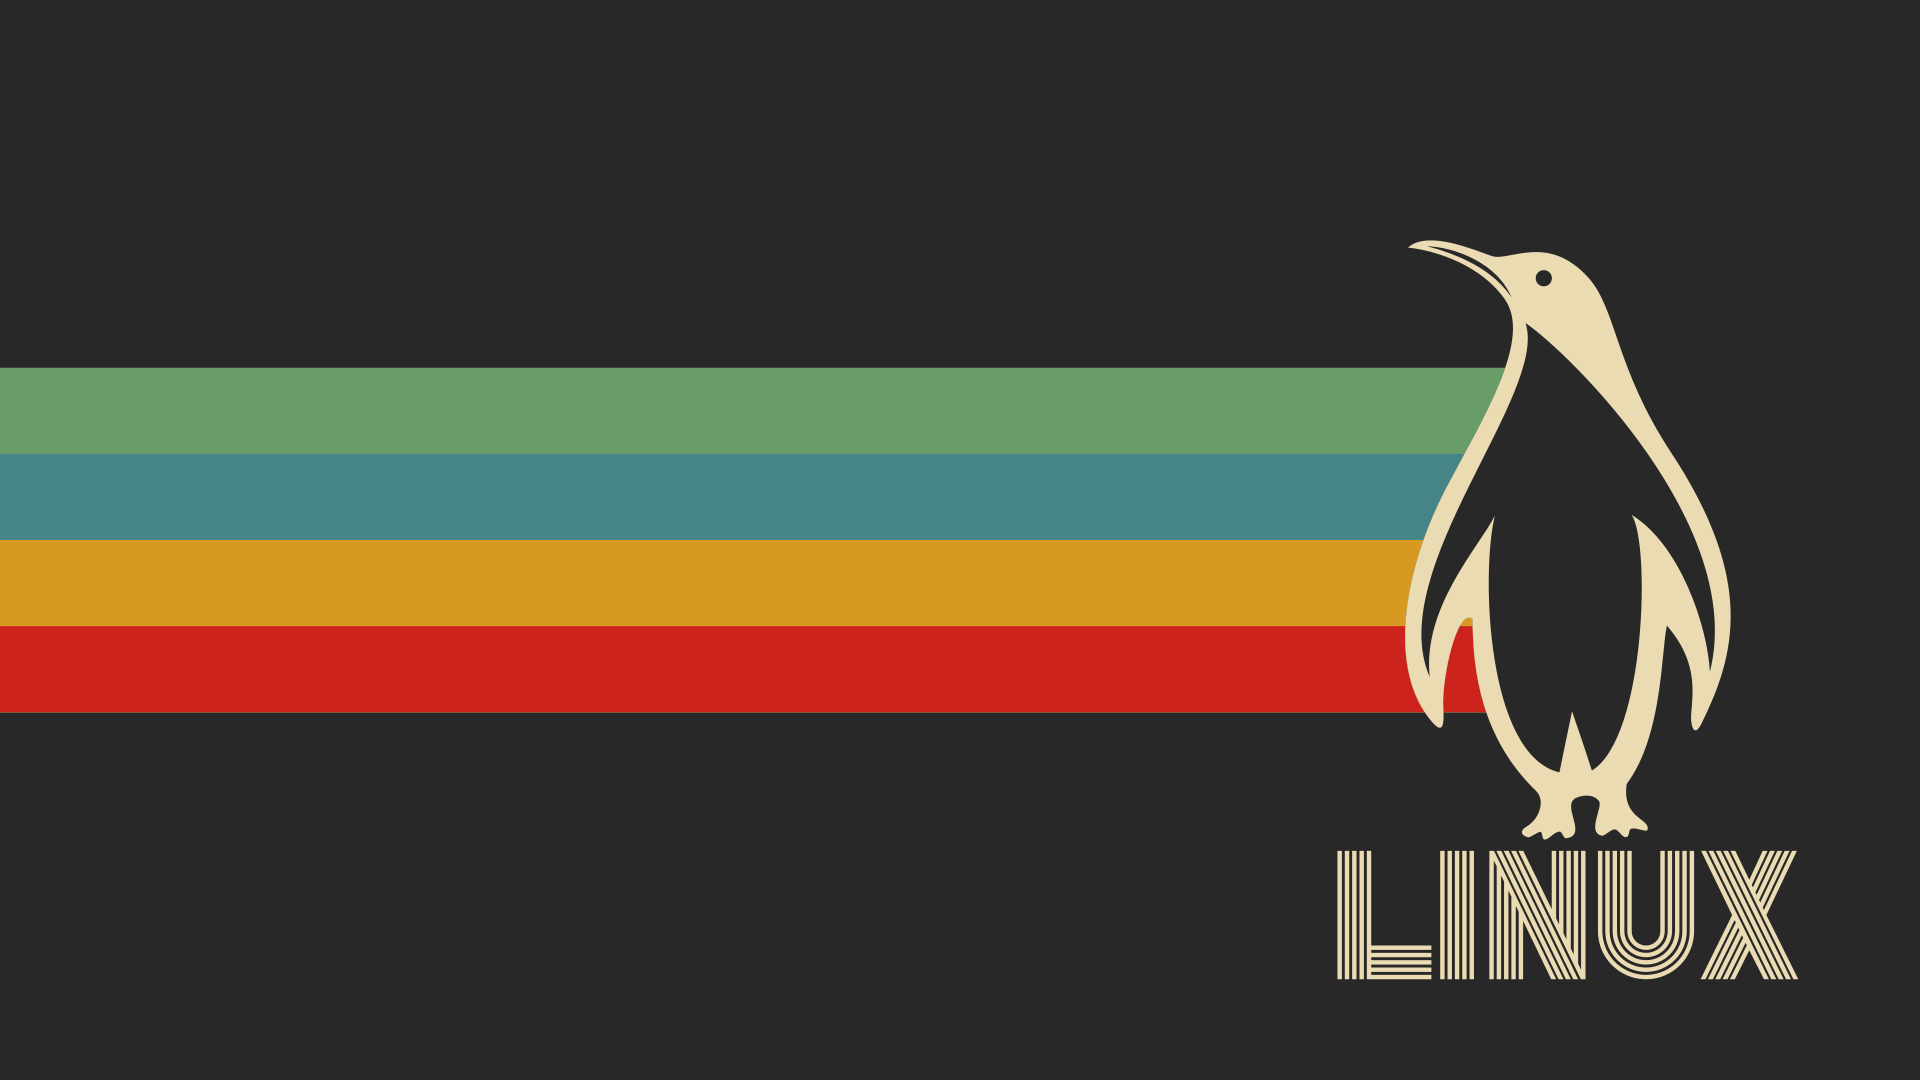 1920x1080 ] Penguin Linux wallpaper, dark \u0026 light, SVG (all resolutions available) : r/wallpaper